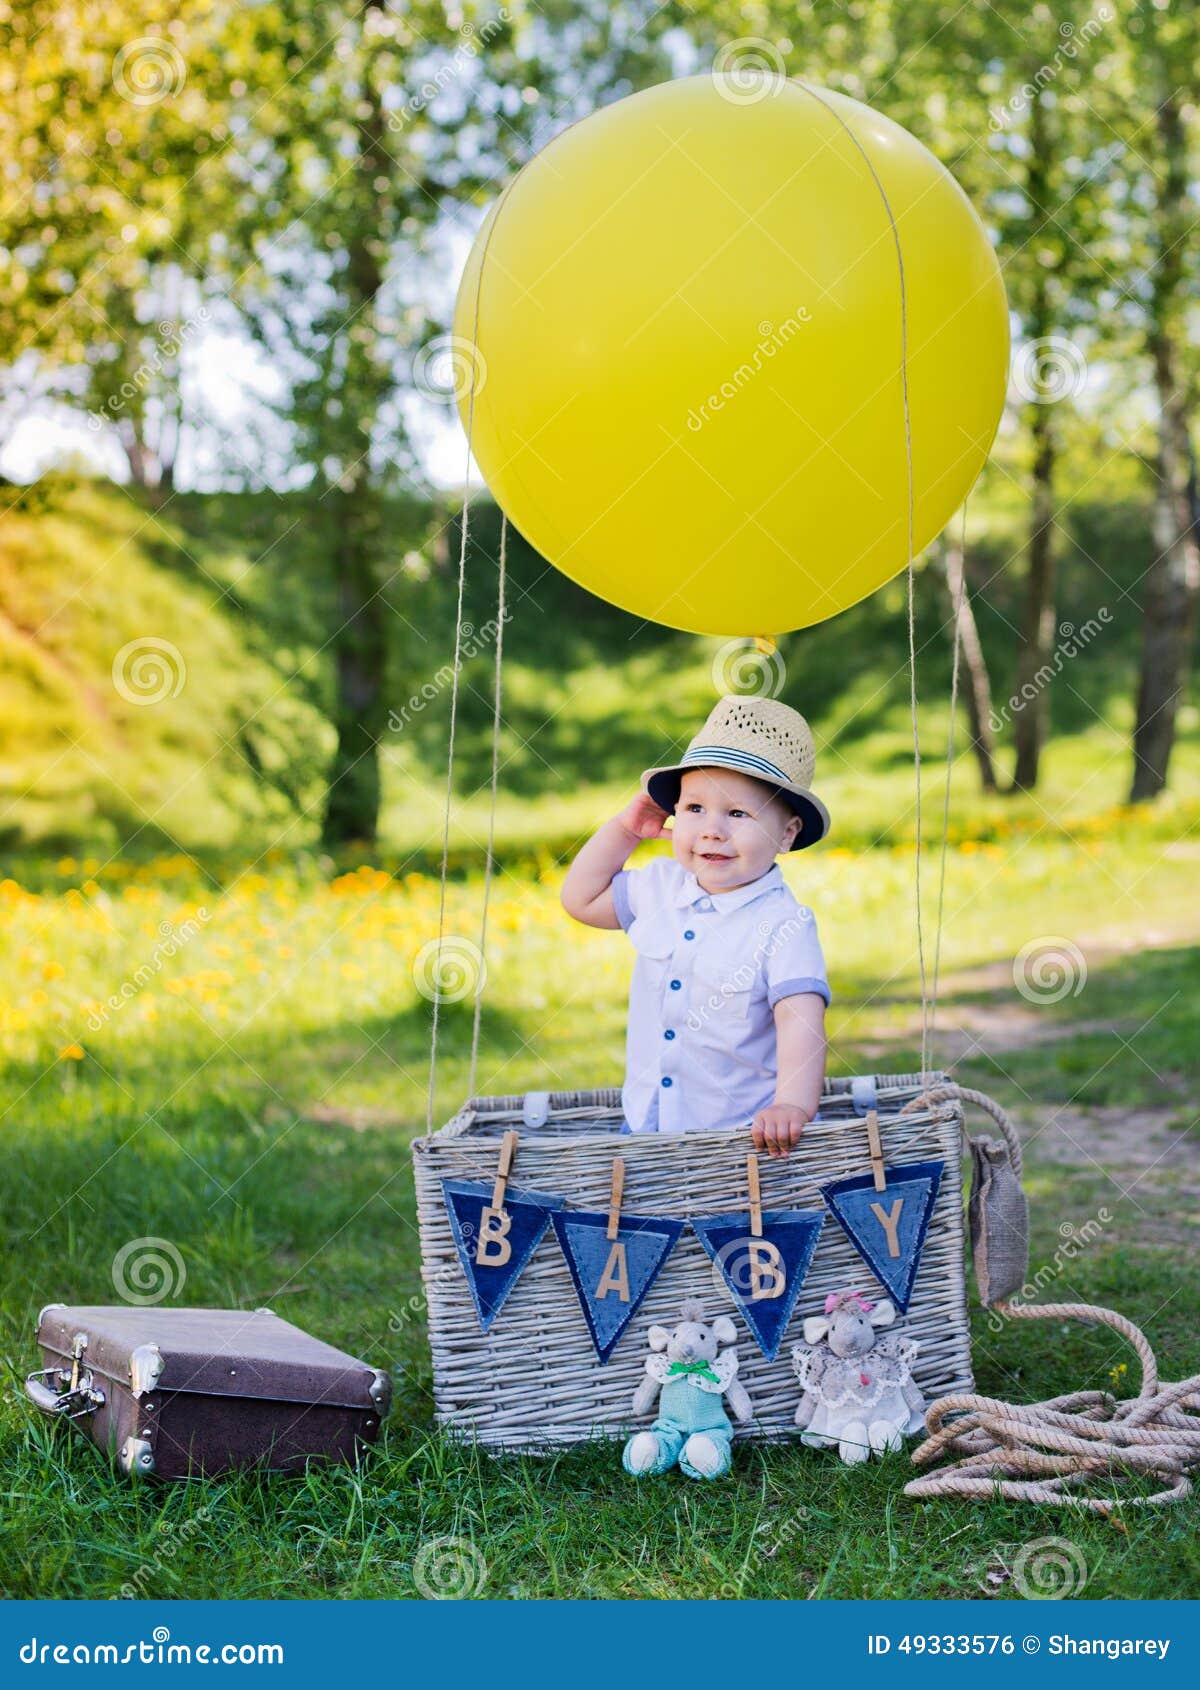 Корзина для воздушных шаров для фотосессии. Воздушный шар с корзиной для фотосессии. Фотосессия с воздушным шаром детская. Корзина с воздушными шарами для фотосессии. Фотозона воздушный шар с корзиной.